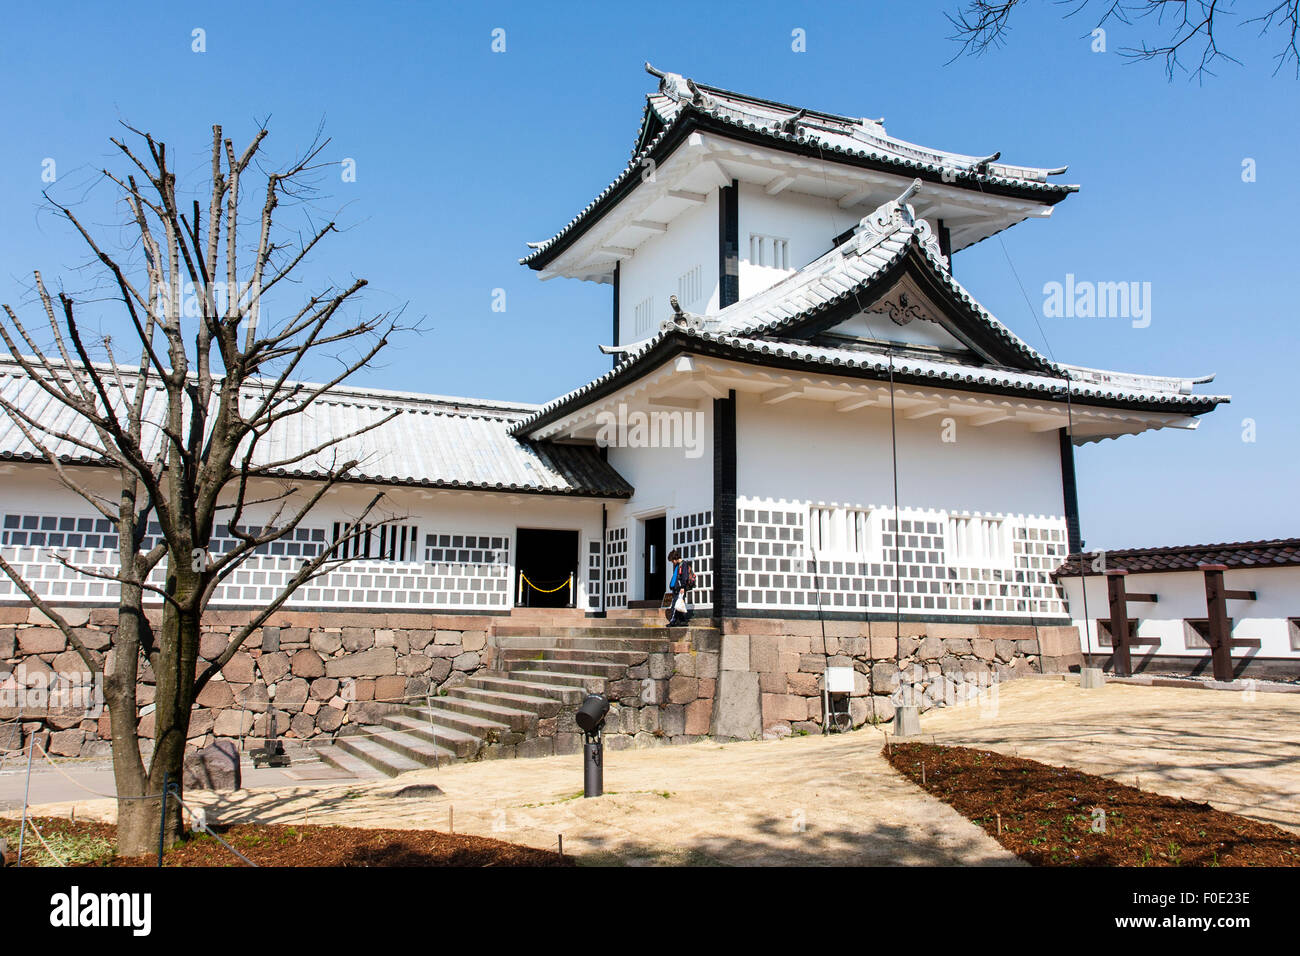 Japan, Kanazawa castle. Two story yagura, turret, part of the Ishikawa-mon gate guarding the bridge entrance into the castle. Blue sky. Stock Photo